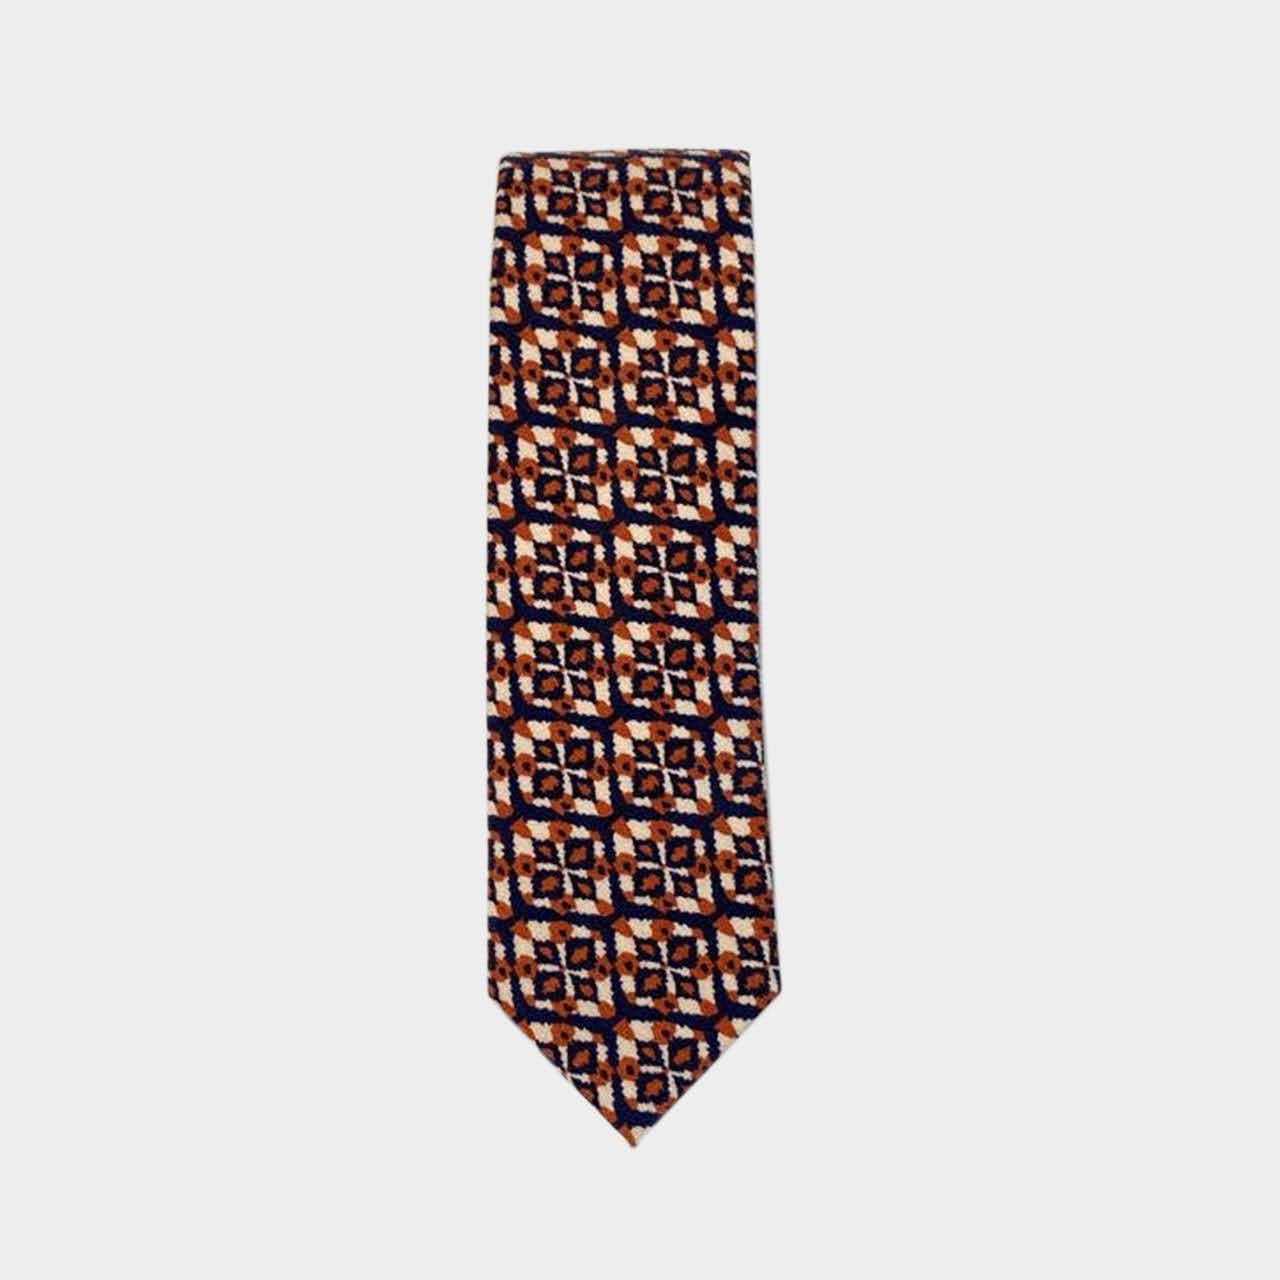 BRONCO - Men's Tie